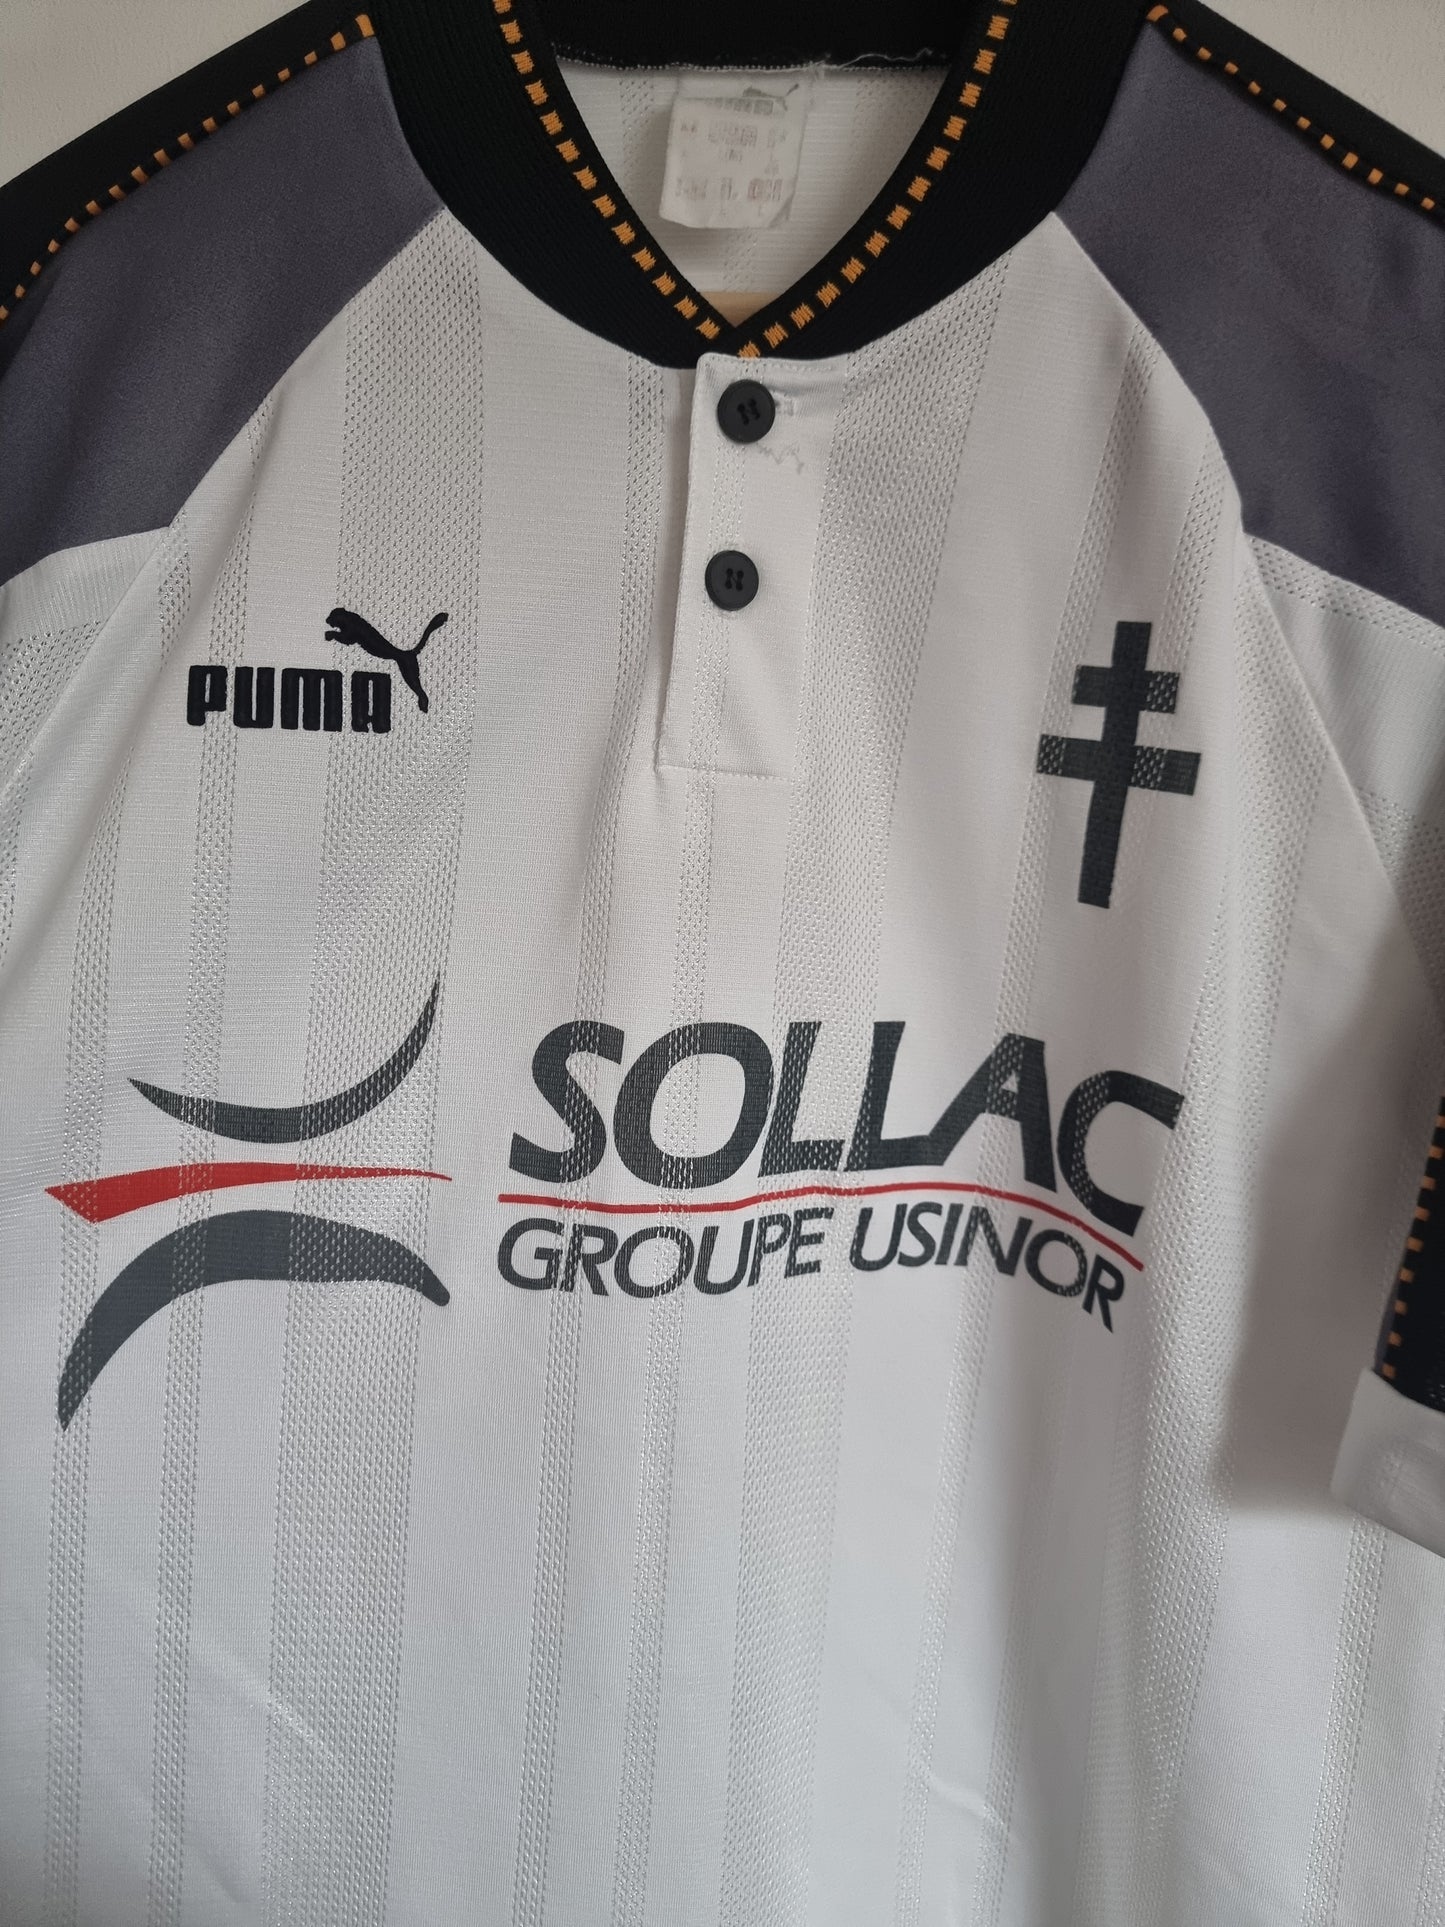 Puma Metz 97/98 Away Shirt Large